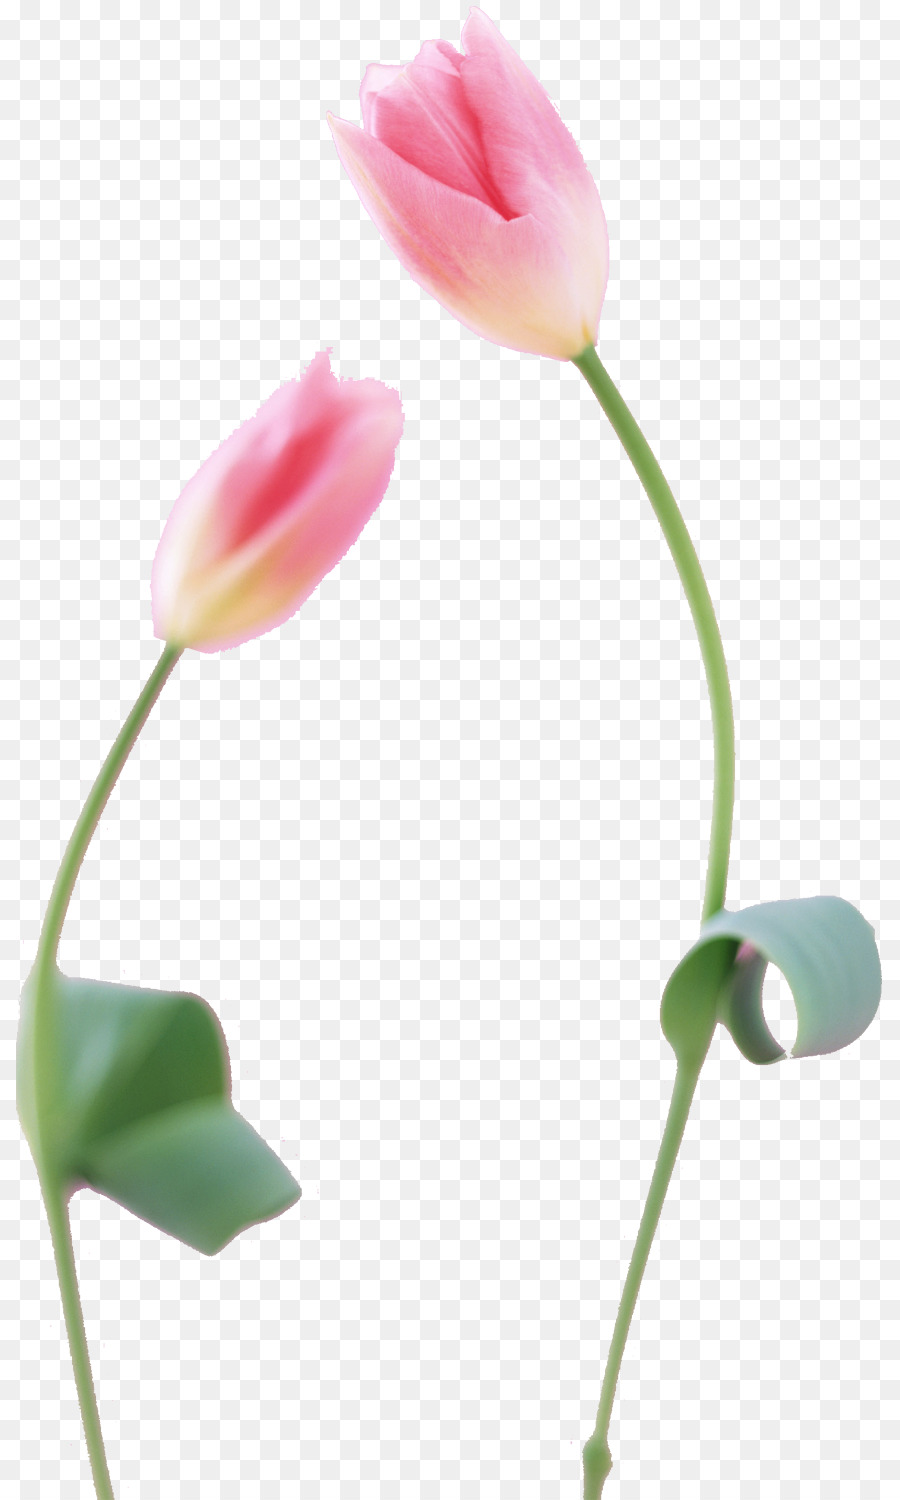 Tulip la Fotografia di Fiori, Petalo staminali Vegetali - Tulipano